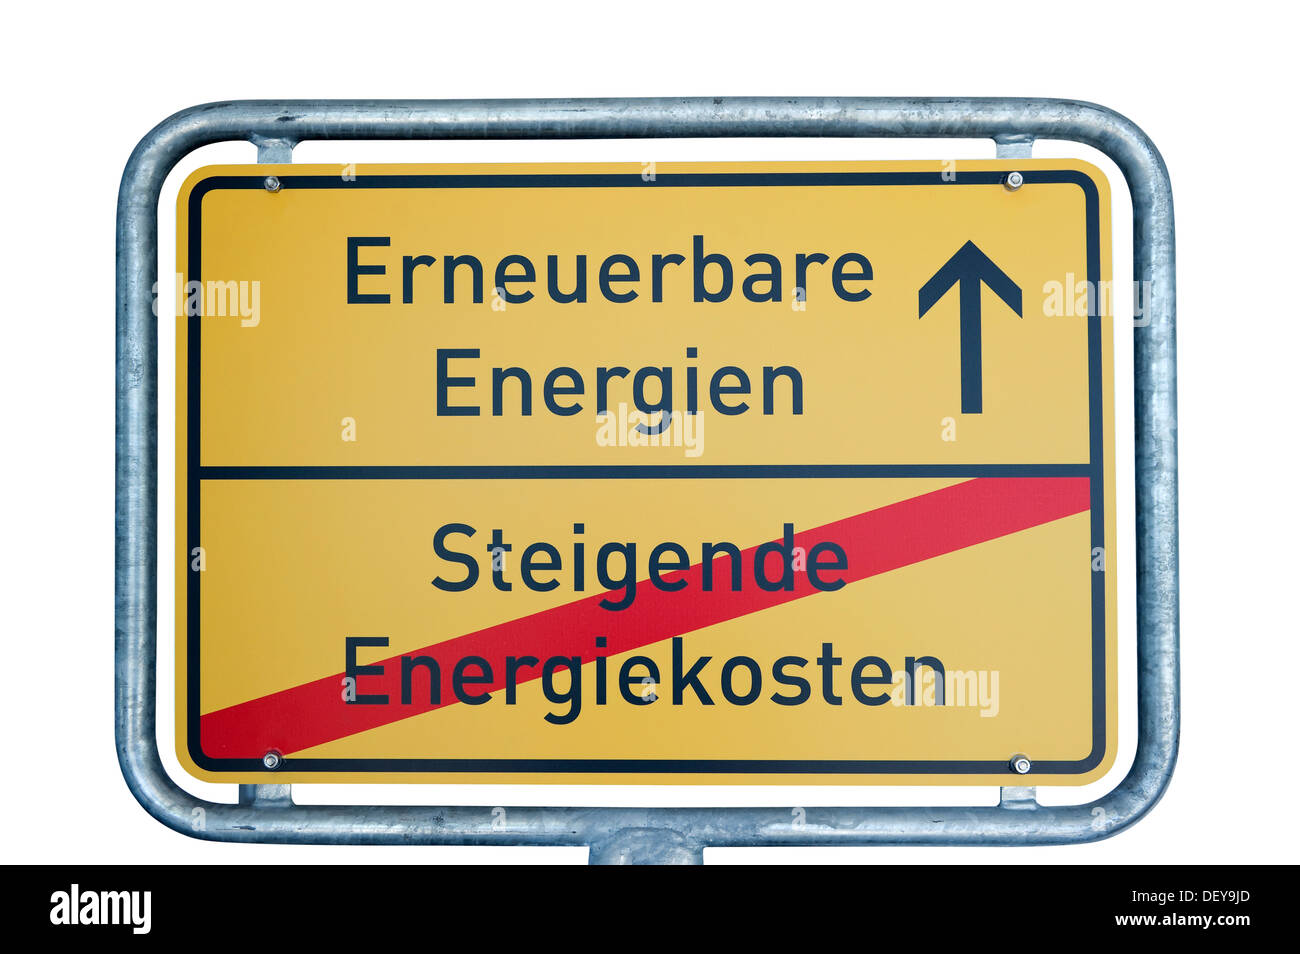 Eingabe von Erneuerbare Energien, so dass Steigende Energiekosten, Deutsch für erneuerbare Energien ab Ende Begrenzung Ortsschild Stockfoto